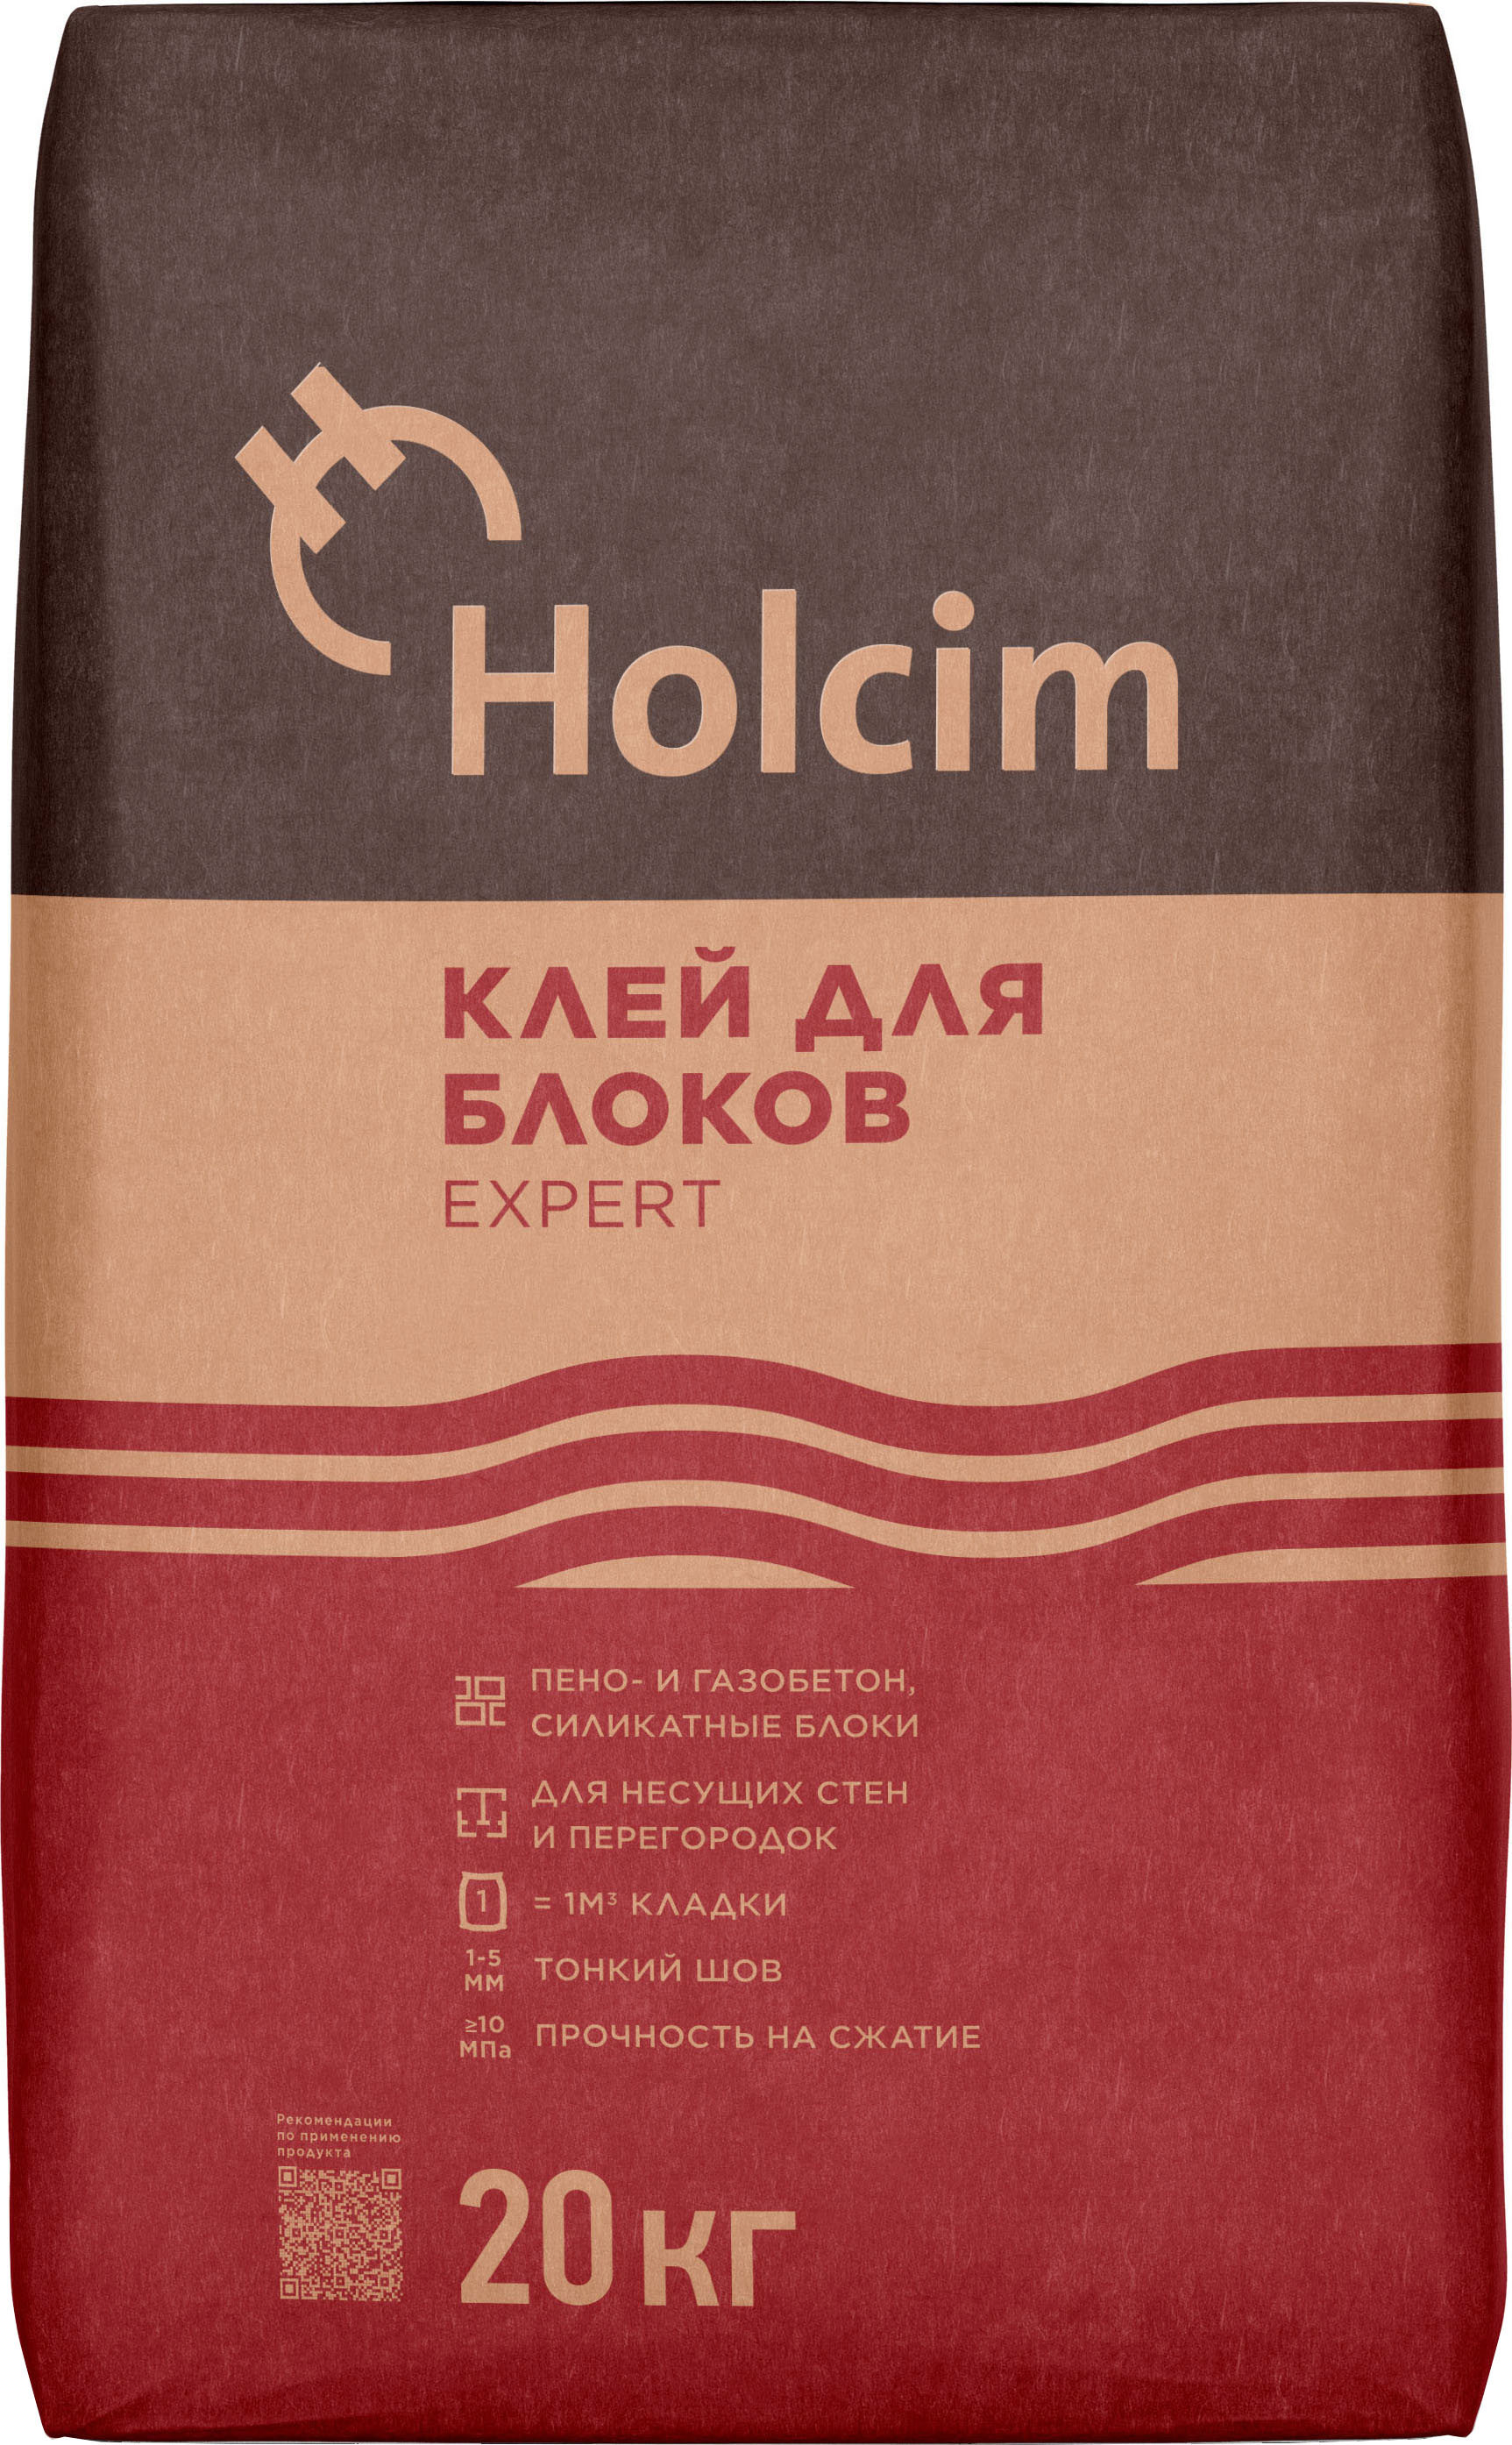 Клей для блоков Holcim Expert 20 кг  –  по низкой цене в .